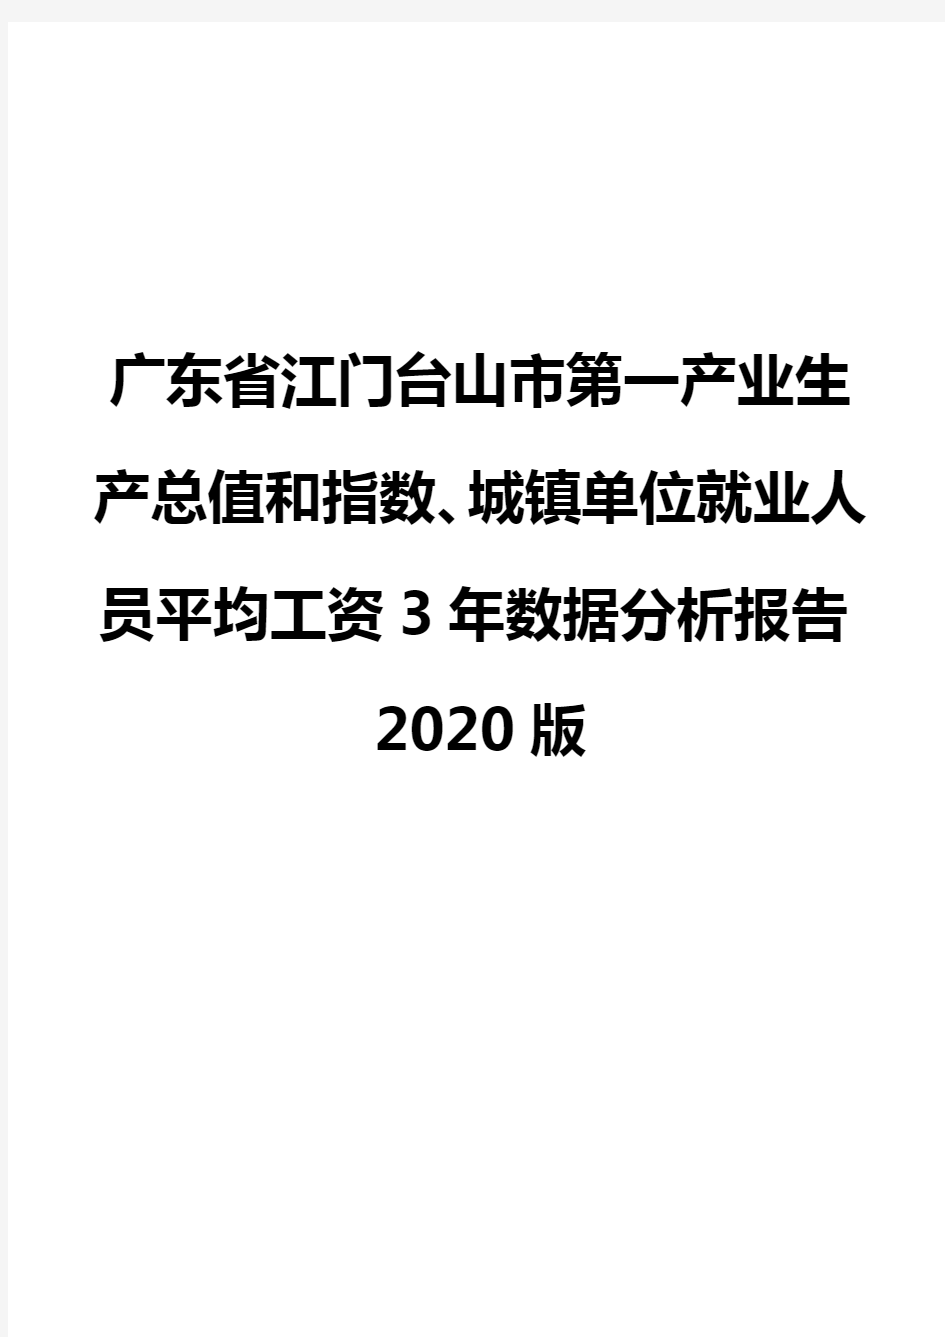 广东省江门台山市第一产业生产总值和指数、城镇单位就业人员平均工资3年数据分析报告2020版